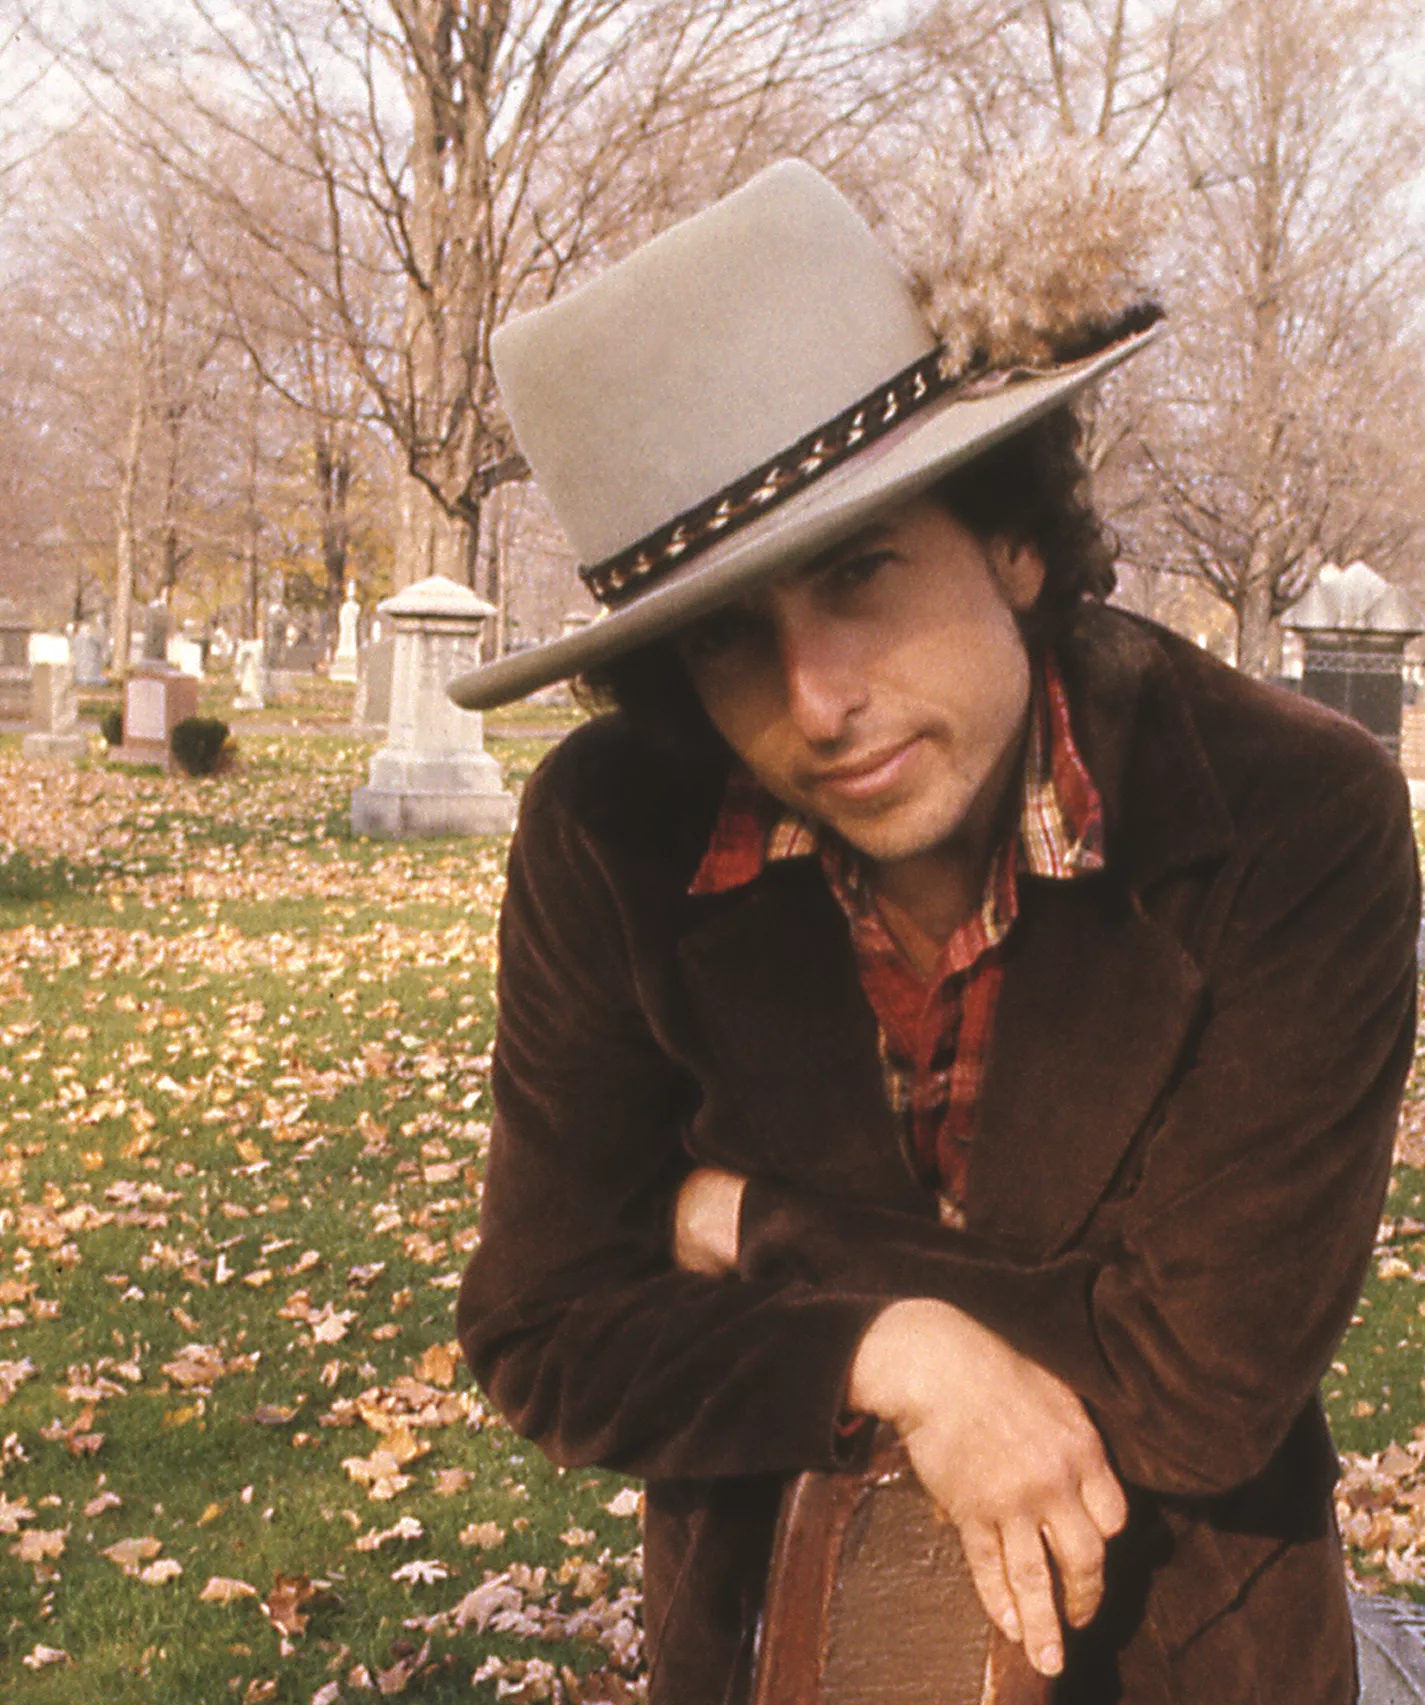 Monumental dokumentation af Dylans mesterværk